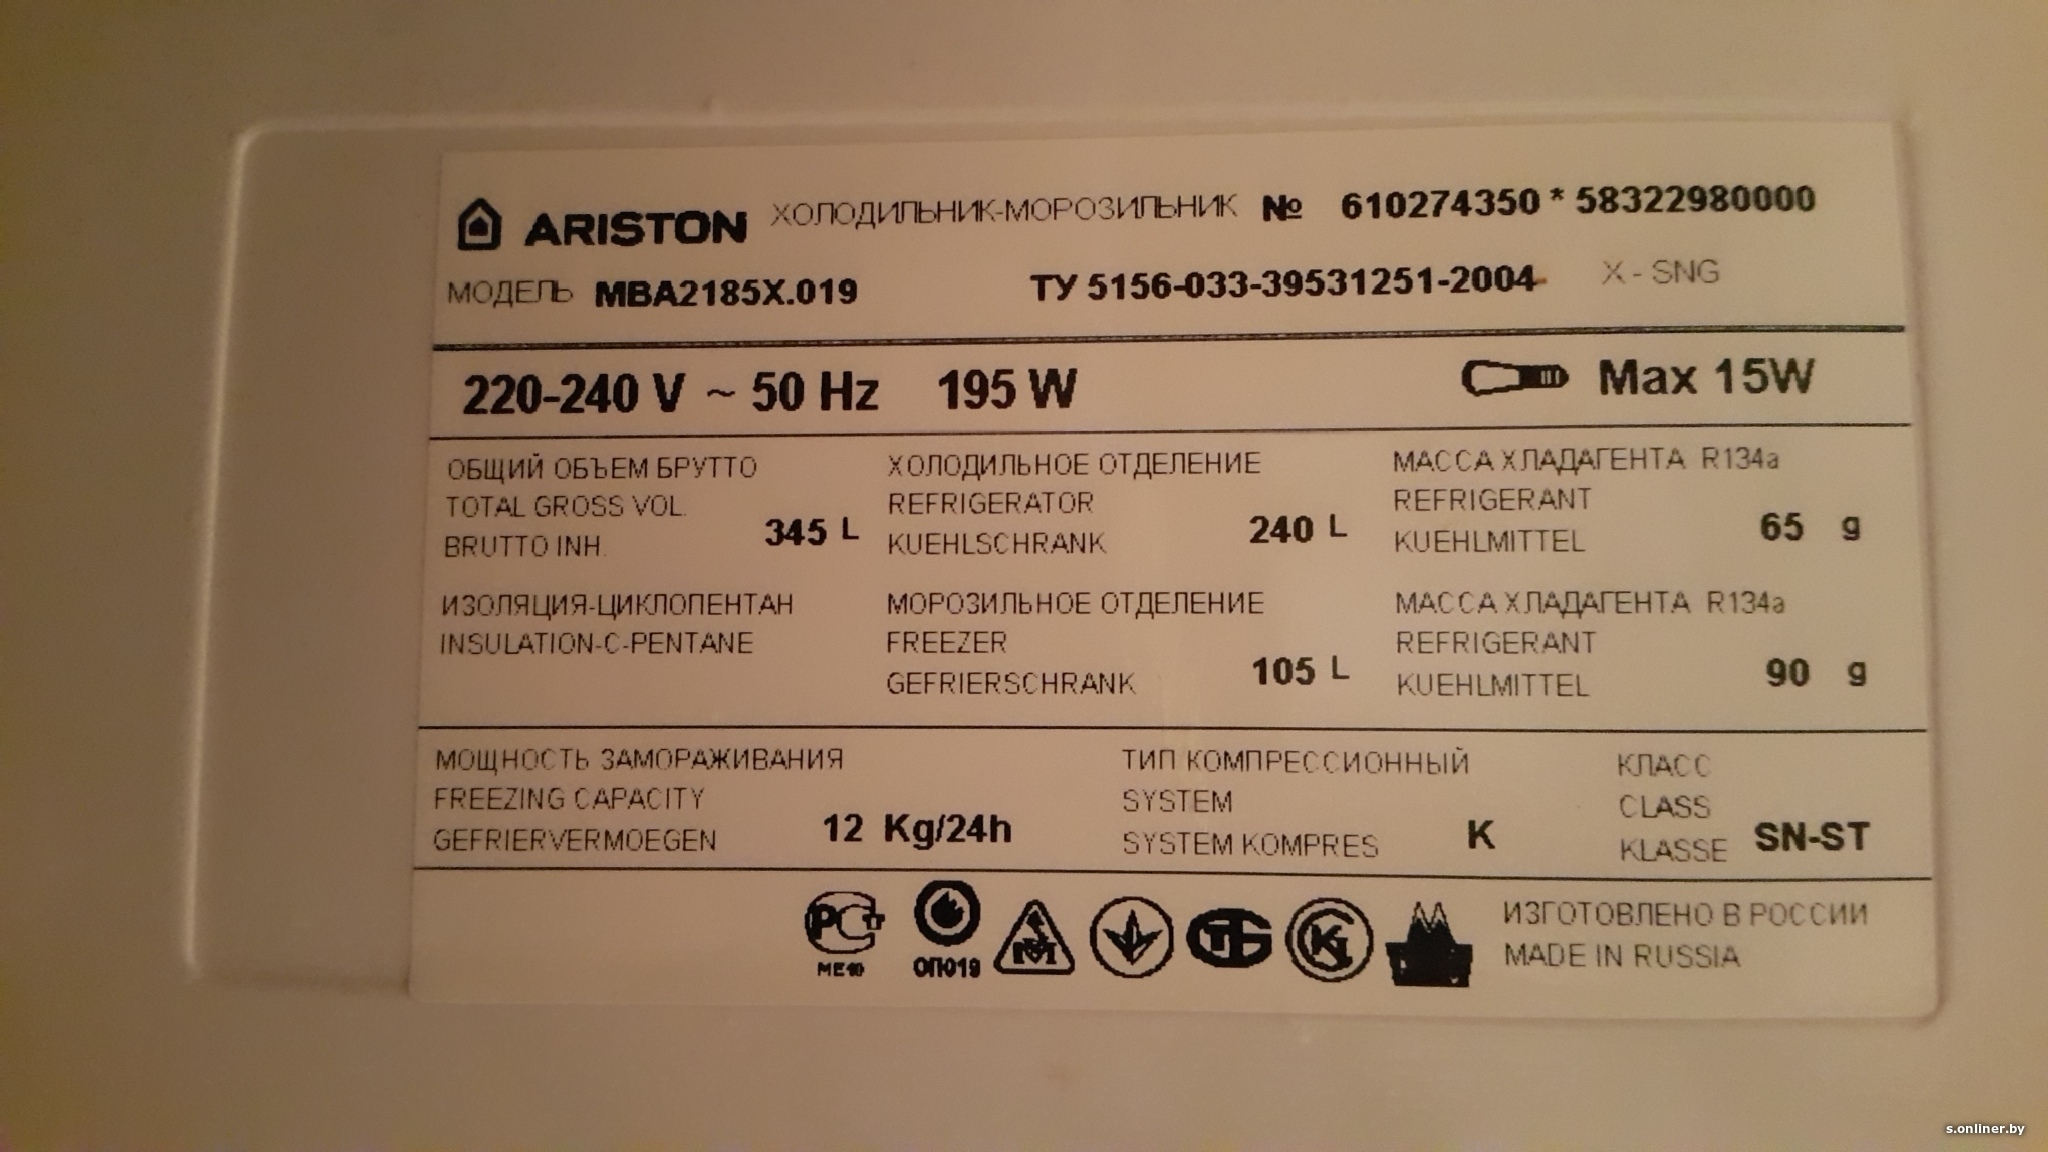 Вес двухкамерного холодильника. Аристон шильдик r134. Характеристика холодильника Hotpoint Ariston. Холодильник Аристон МВА 2185.019. Hotpoint Ariston холодильник Потребляемая мощность.